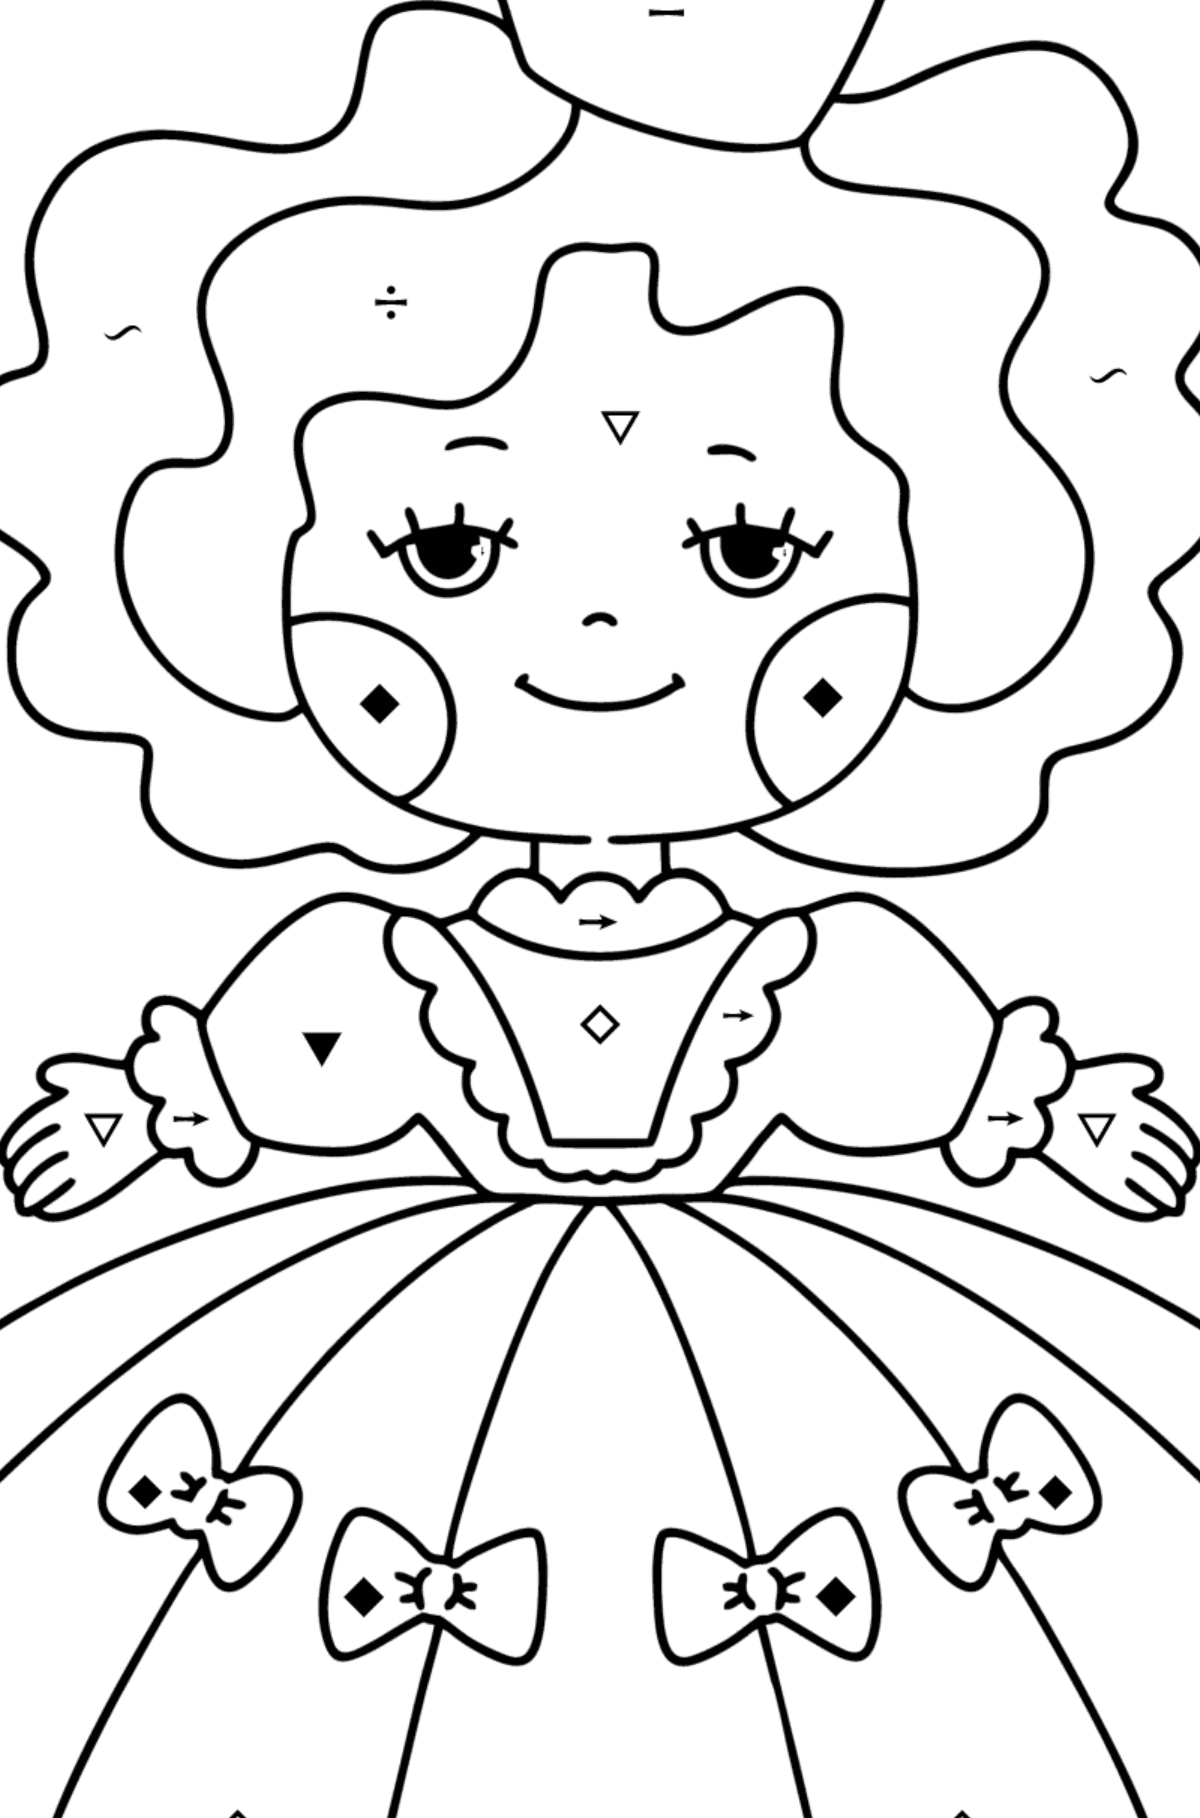 Disegno da colorare Piccola principessa - Colorare per simboli per bambini